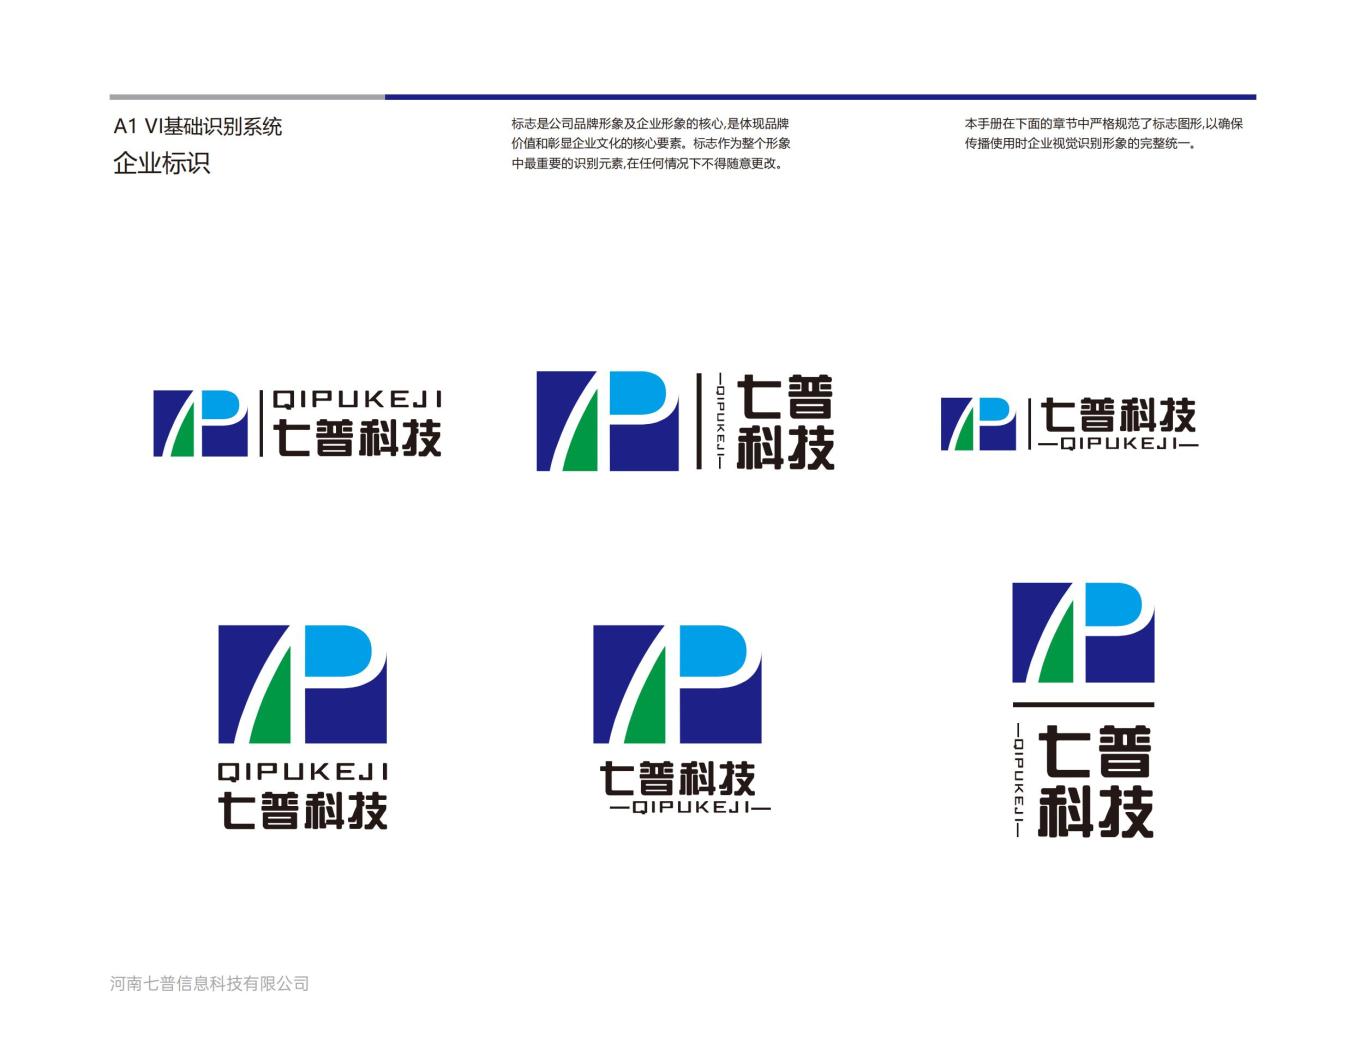 河南七普信息科技有限公司logo提案B图7